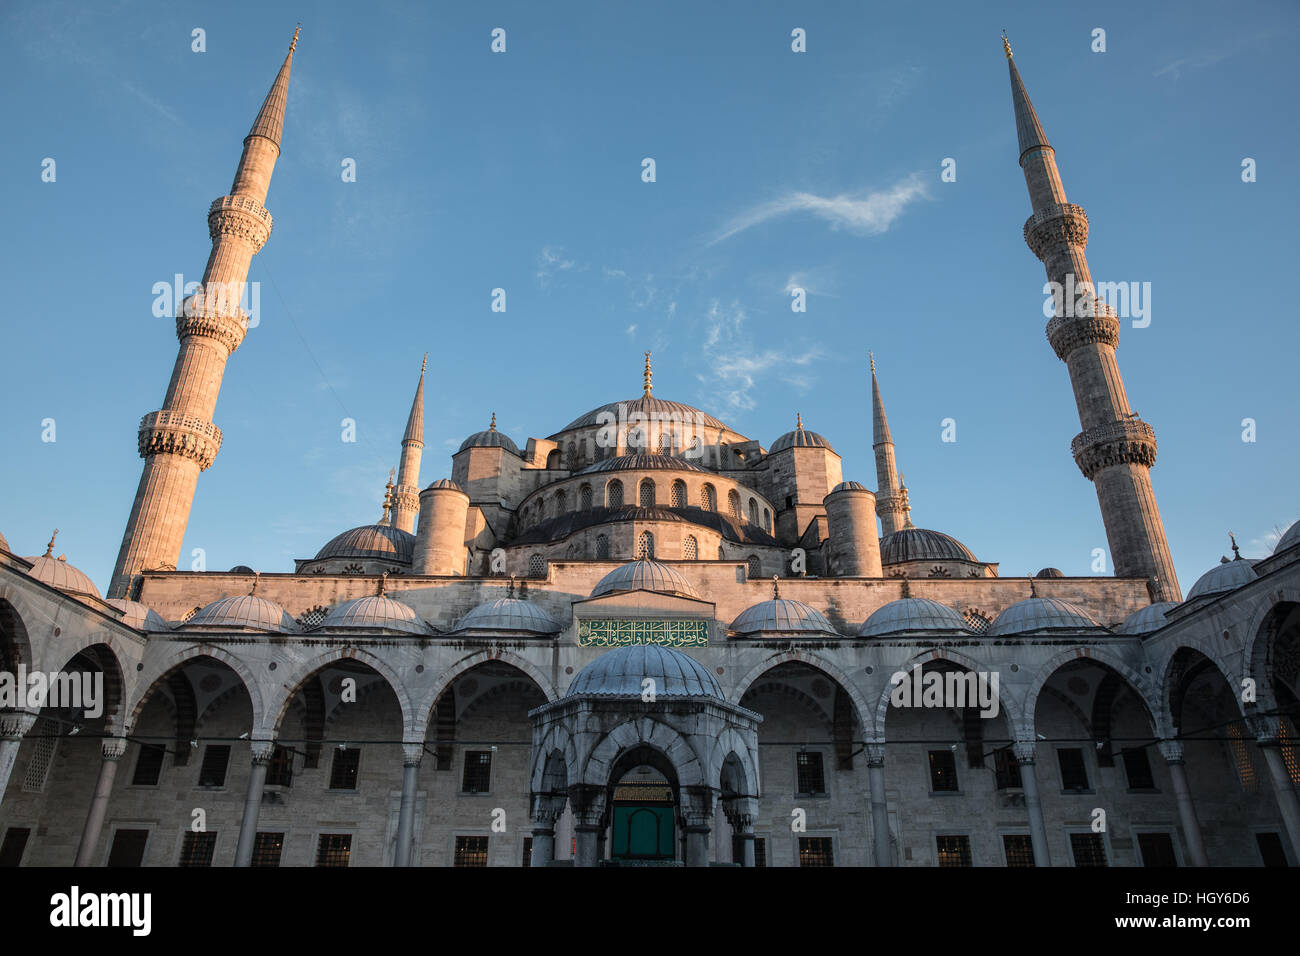 La cour de la Mosquée Bleue (Sultanahmet) à Istanbul, Turquie. Banque D'Images